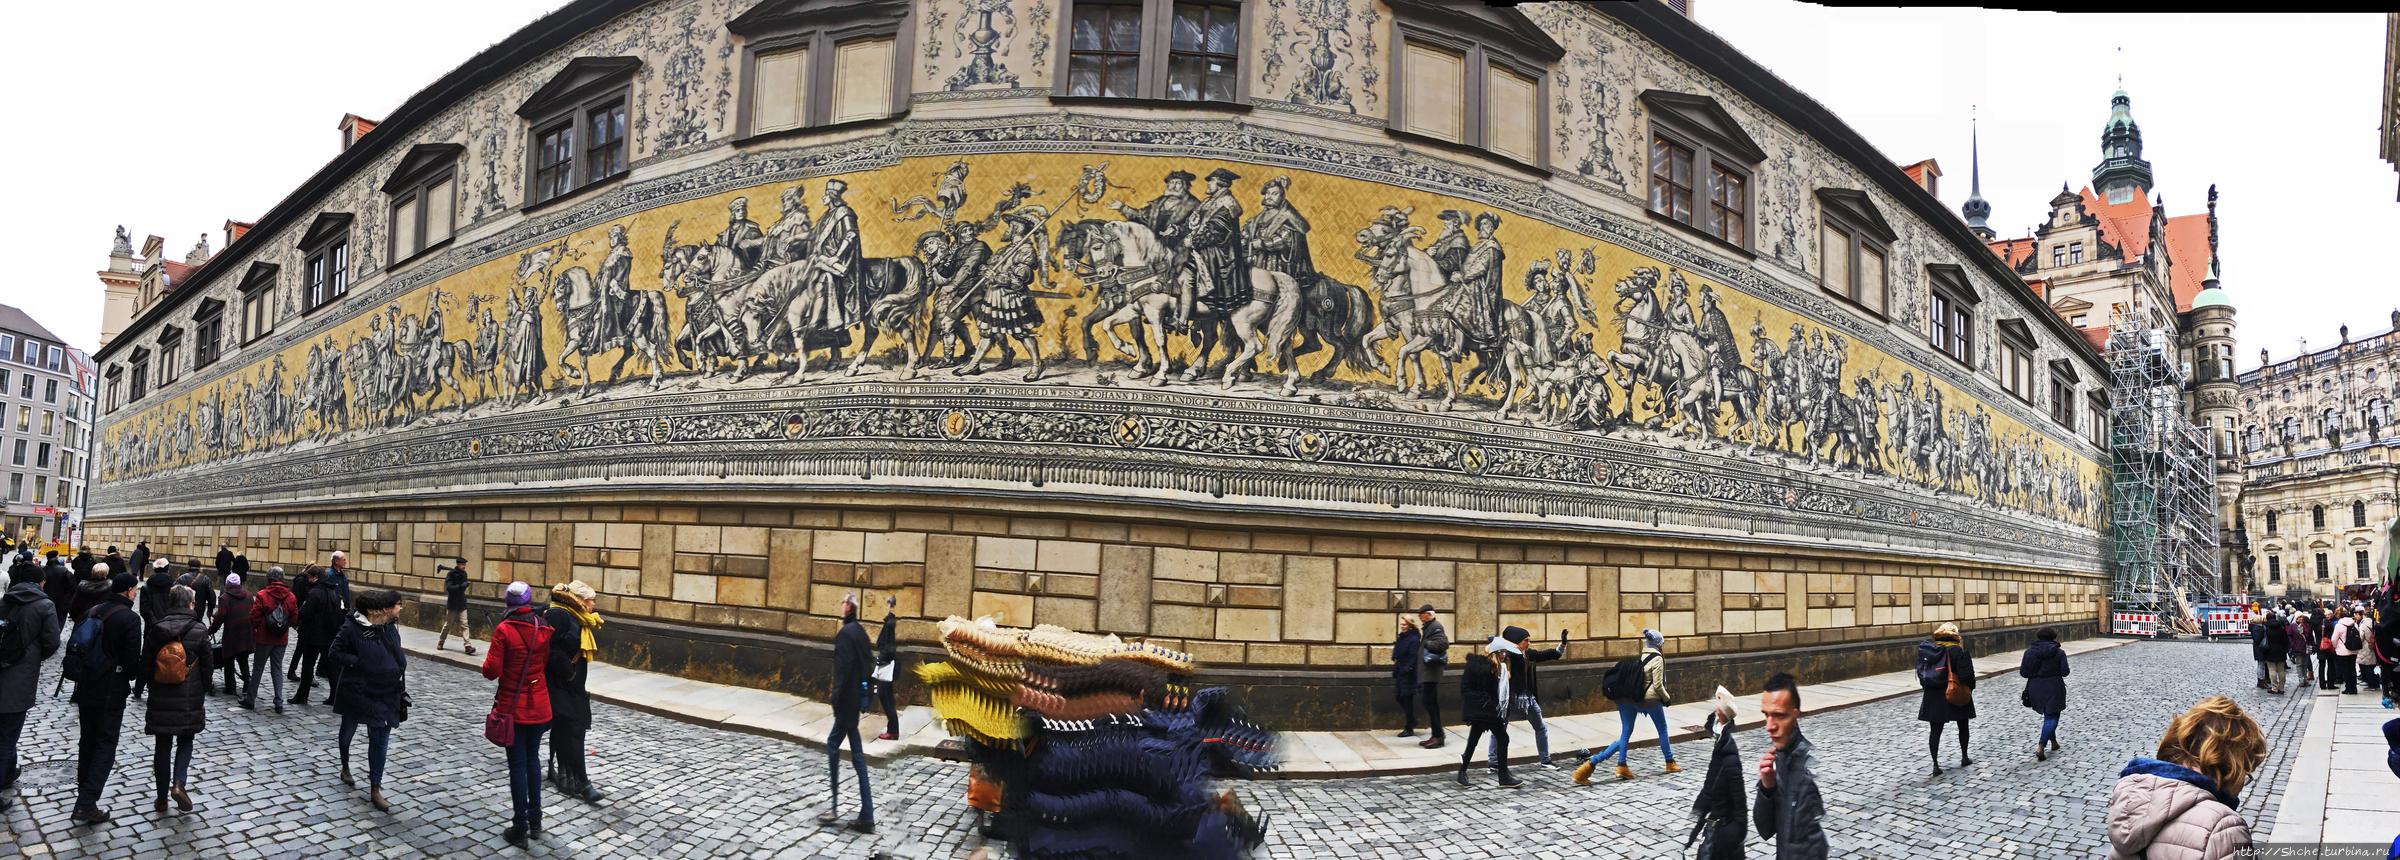 Конюшенный двор Дрезден, Германия